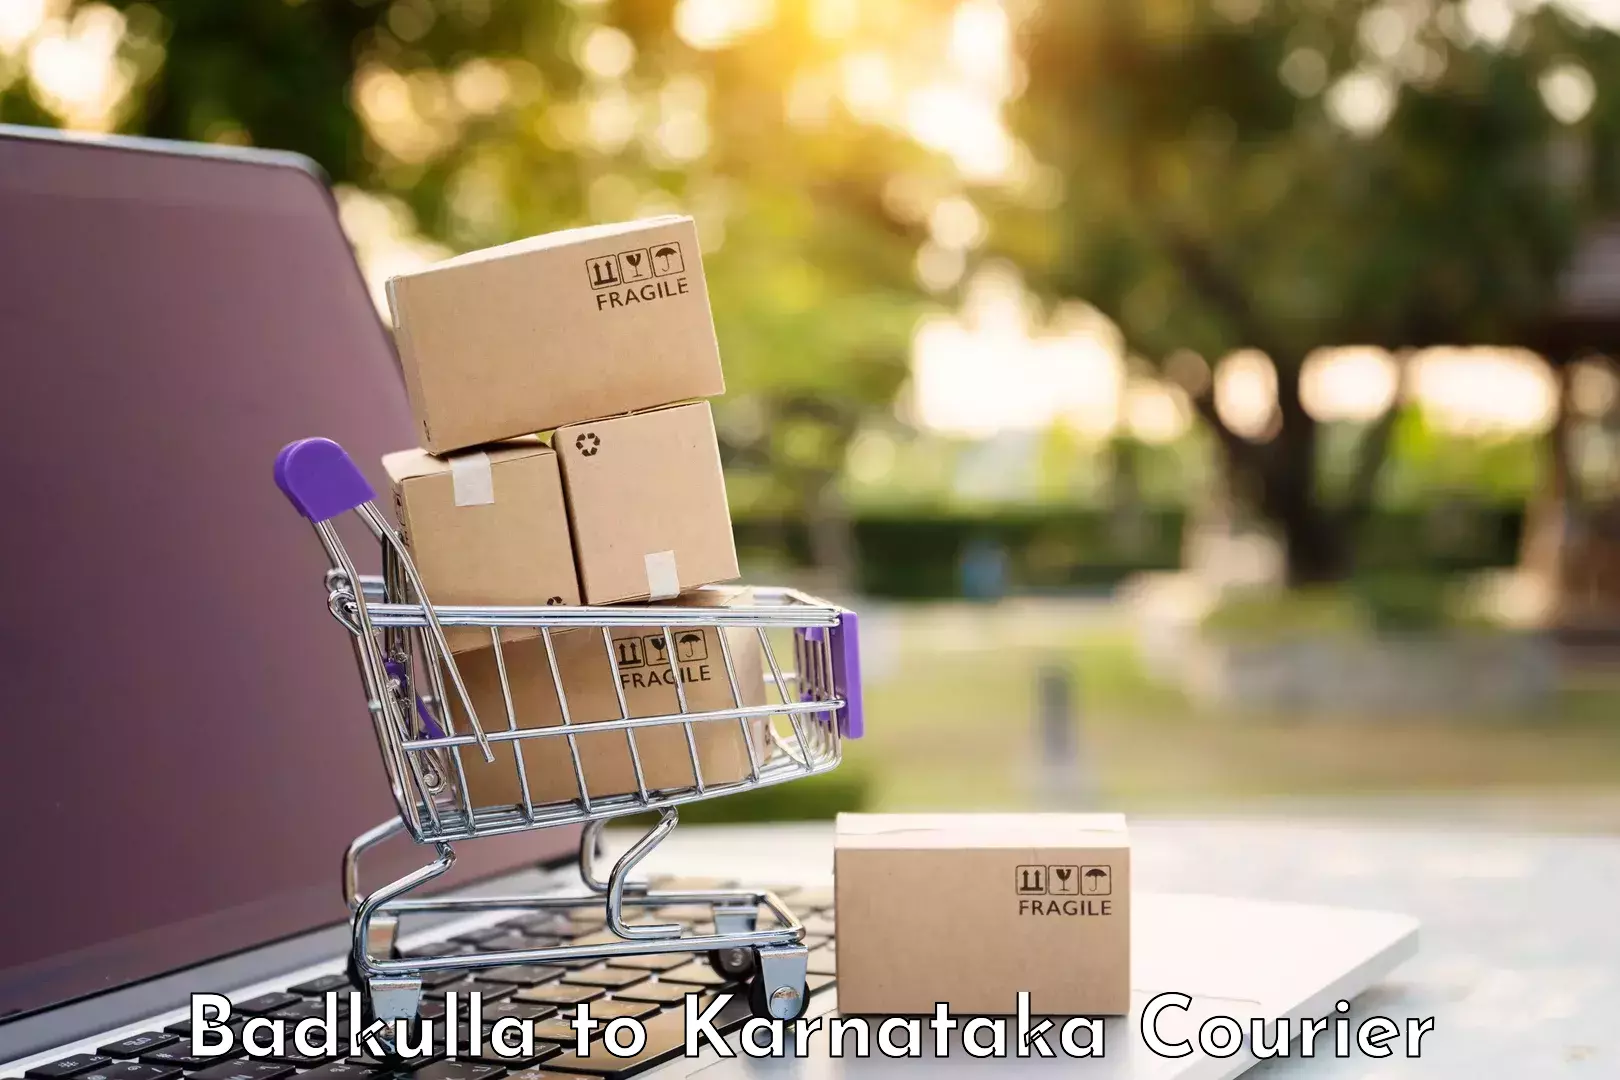 Baggage transport technology Badkulla to Karnataka